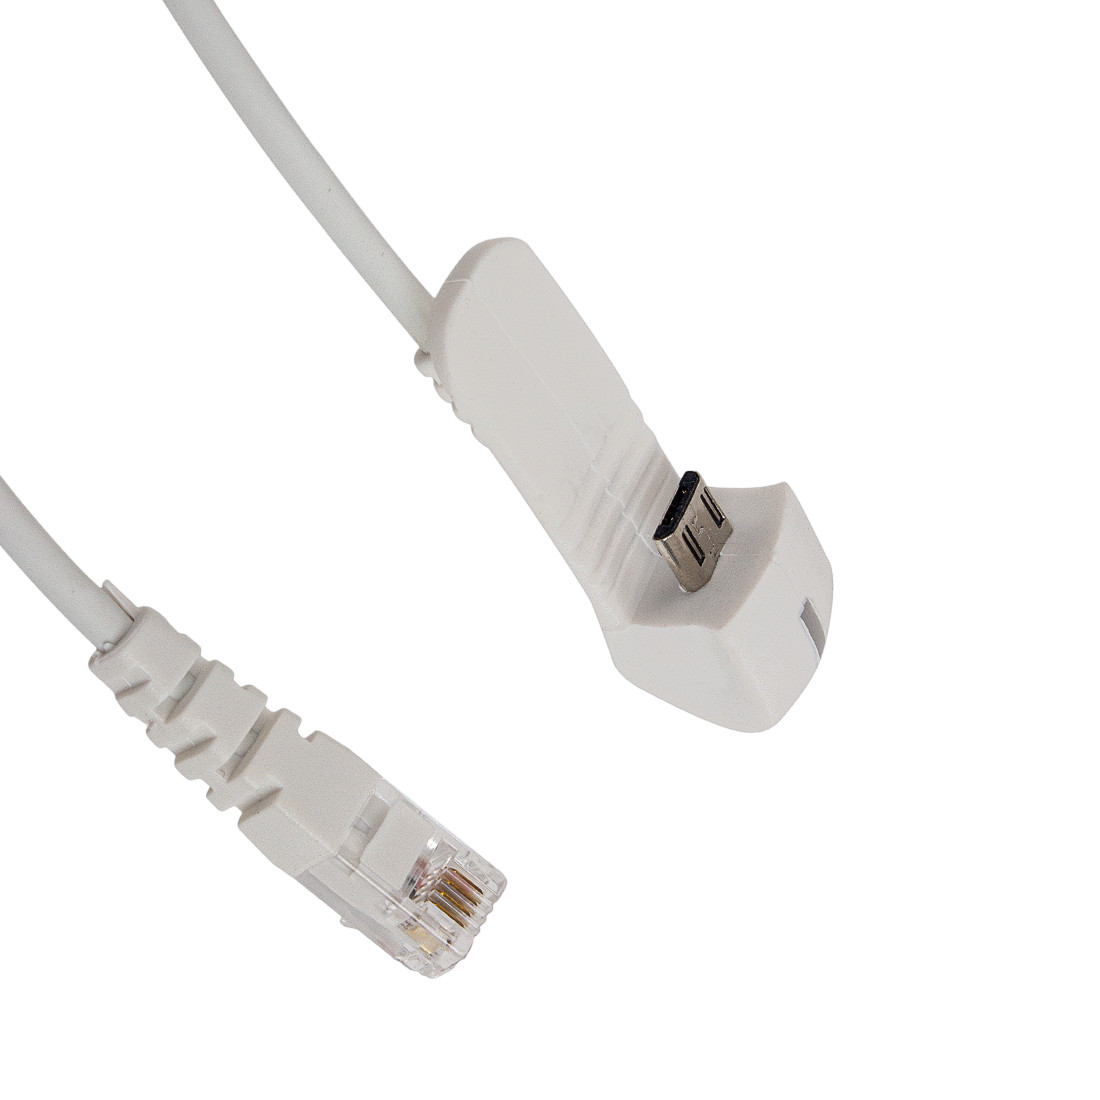 Противокражный кабель  Eagle  A6725A-001WRJ  micro USB  белый